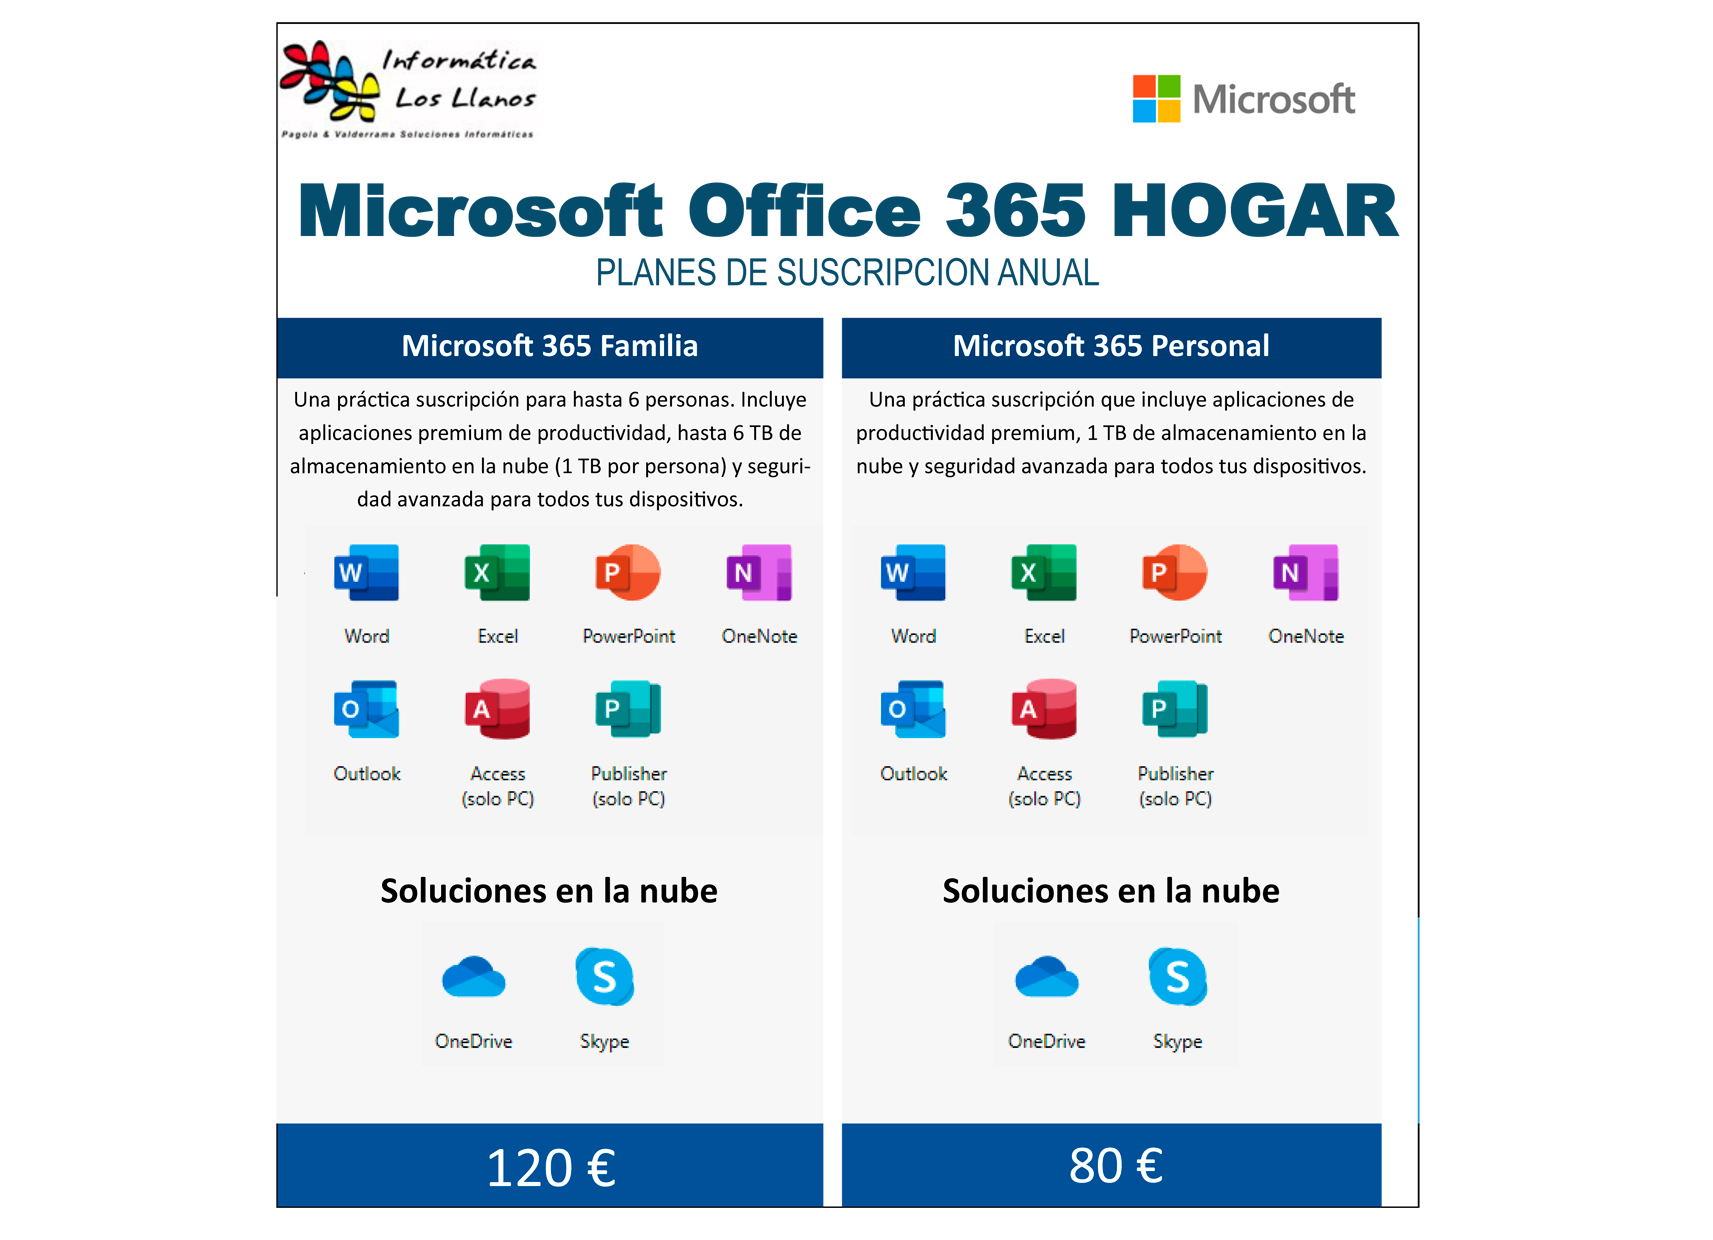 Soluciones de productividad ofimática, almacenamiento en la nube, exchange  y el correo electrónico - Office 365 y Microsoft Exchange Online